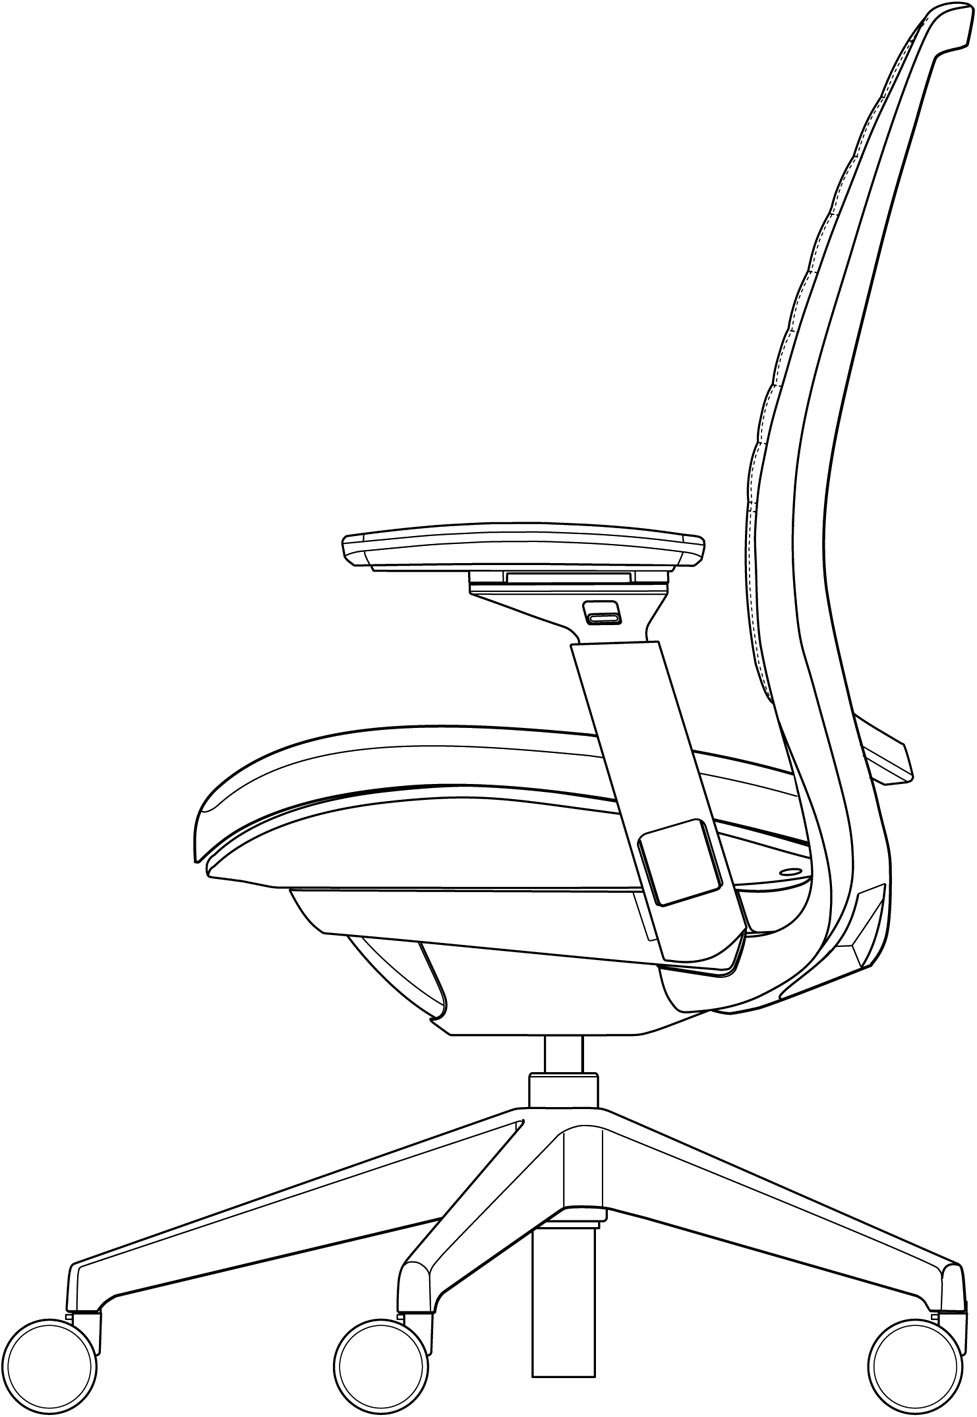 1.本外观设计产品的名称:椅子.2.本外观设计产品的用途:用于座椅.3.